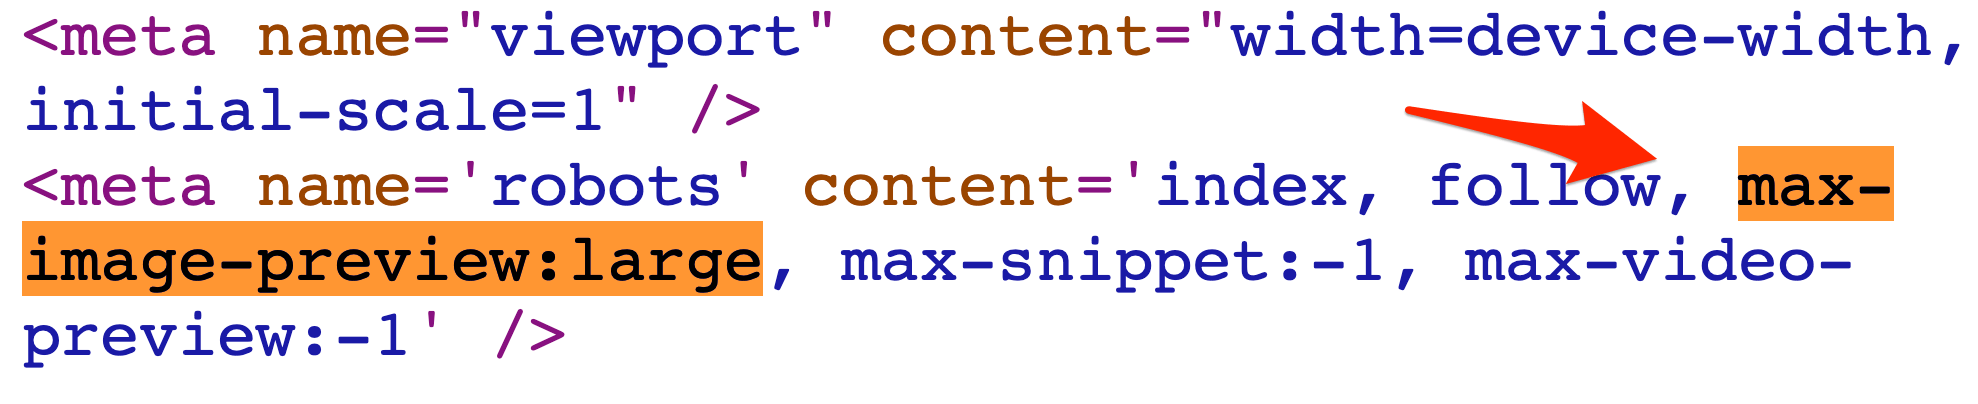 max-image-preview meta tag